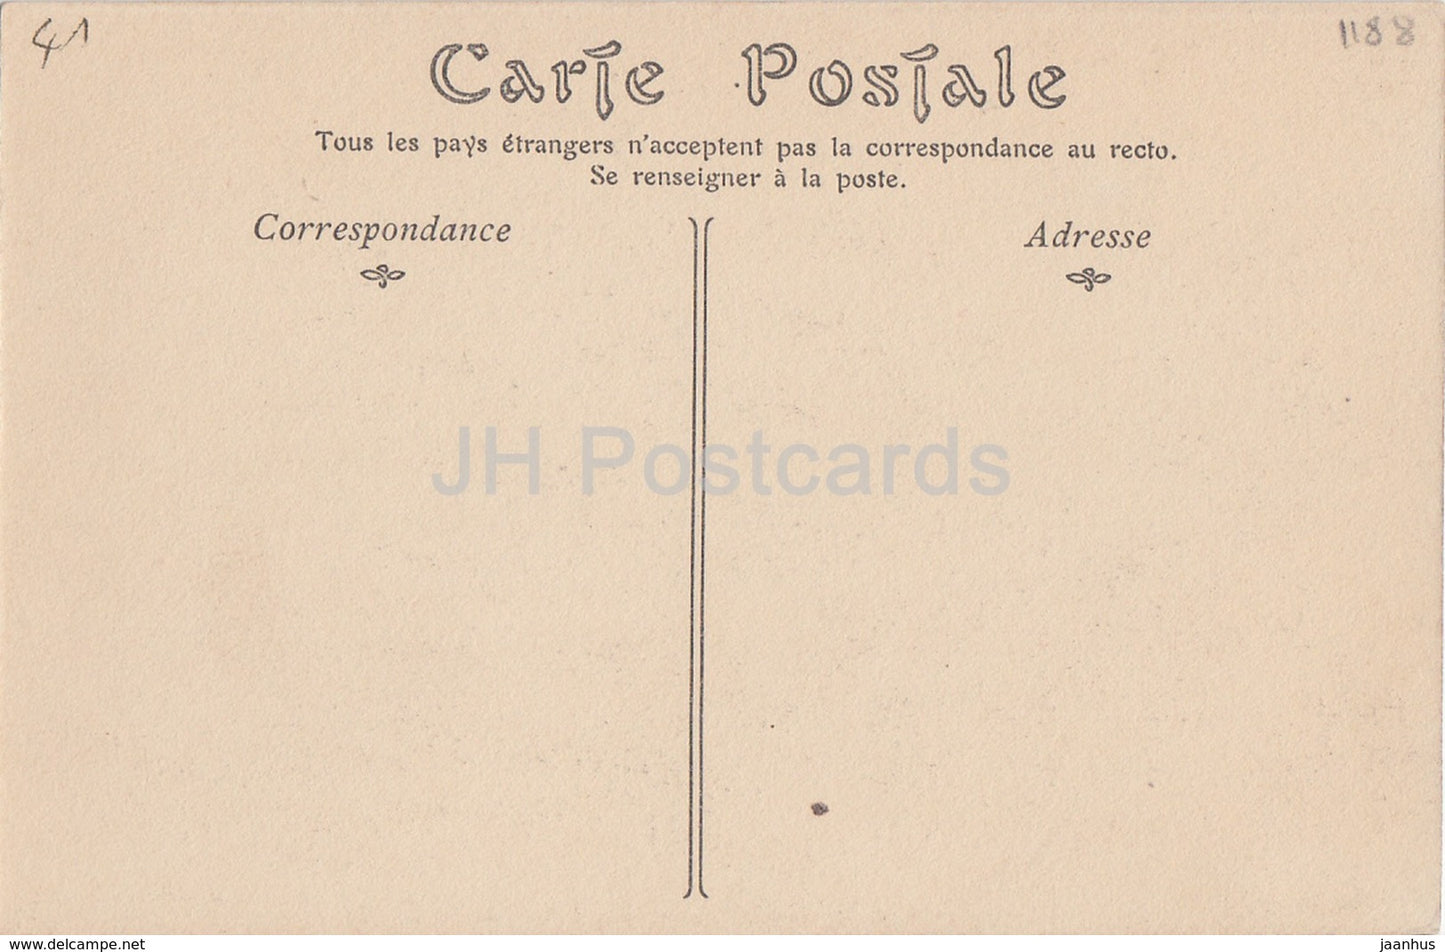 Montoire sur le Loir - Château - ruines du château - 41 - carte postale ancienne - France - inutilisée